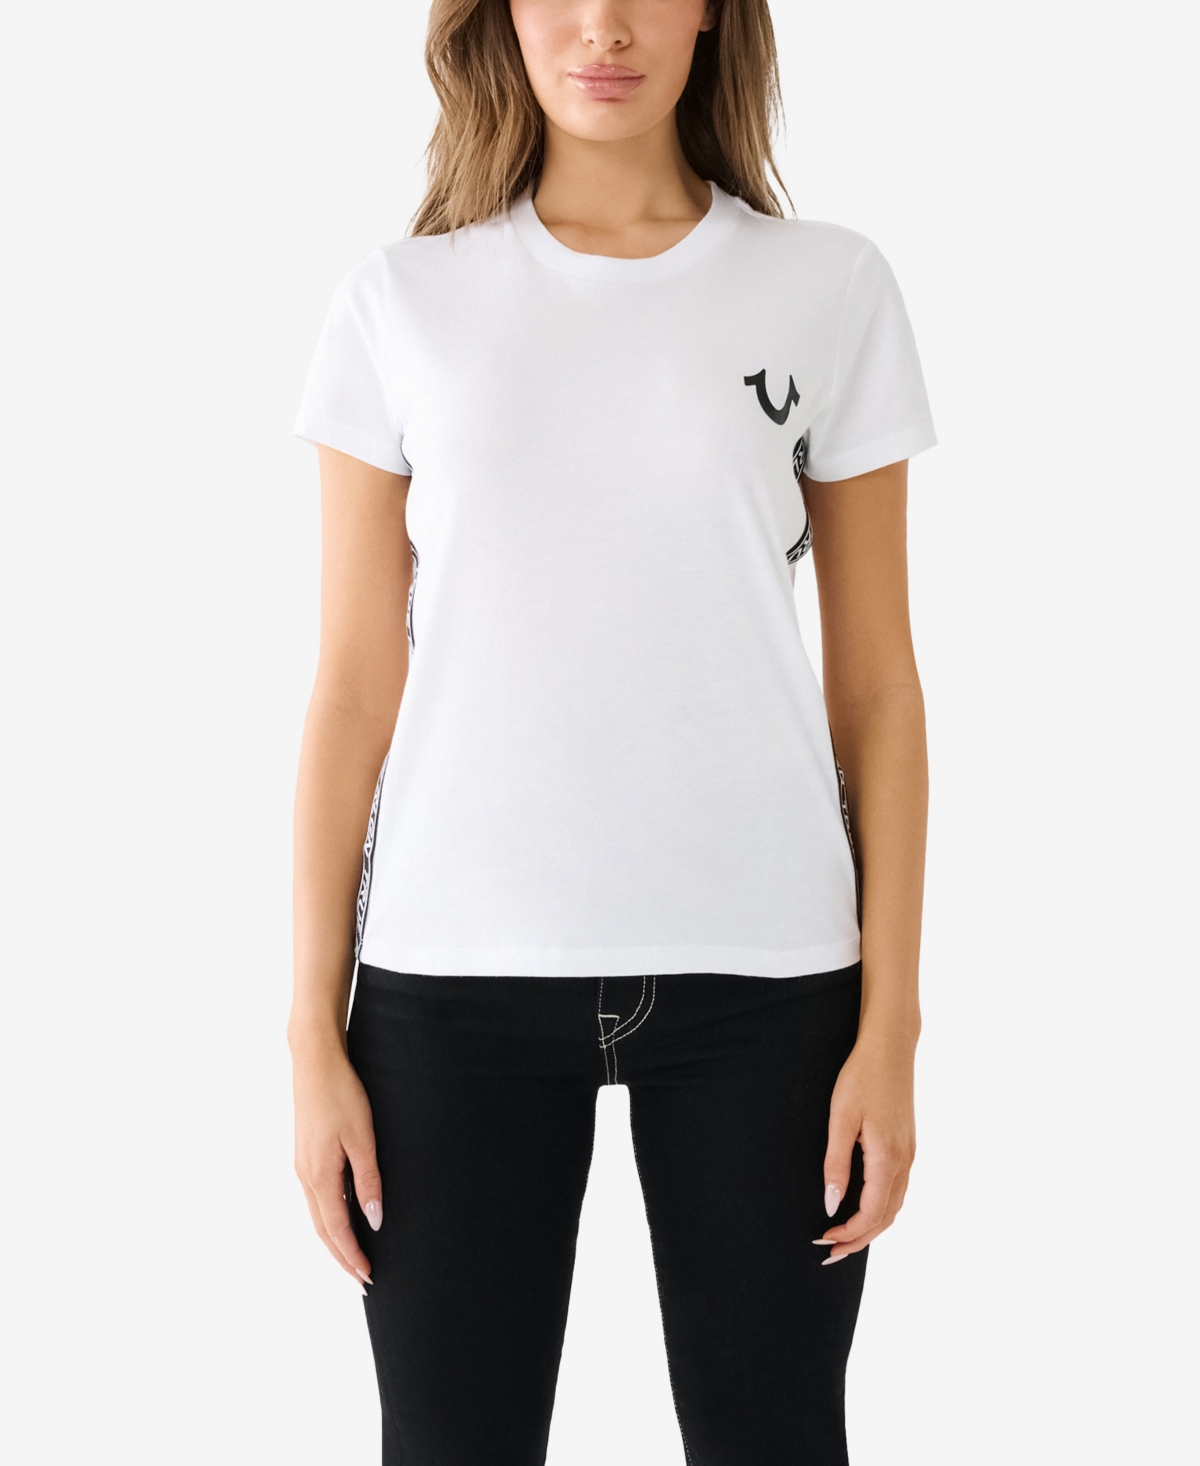 Women's Short Sleeve Side Tape Slim Crew T-shirt - Optic White